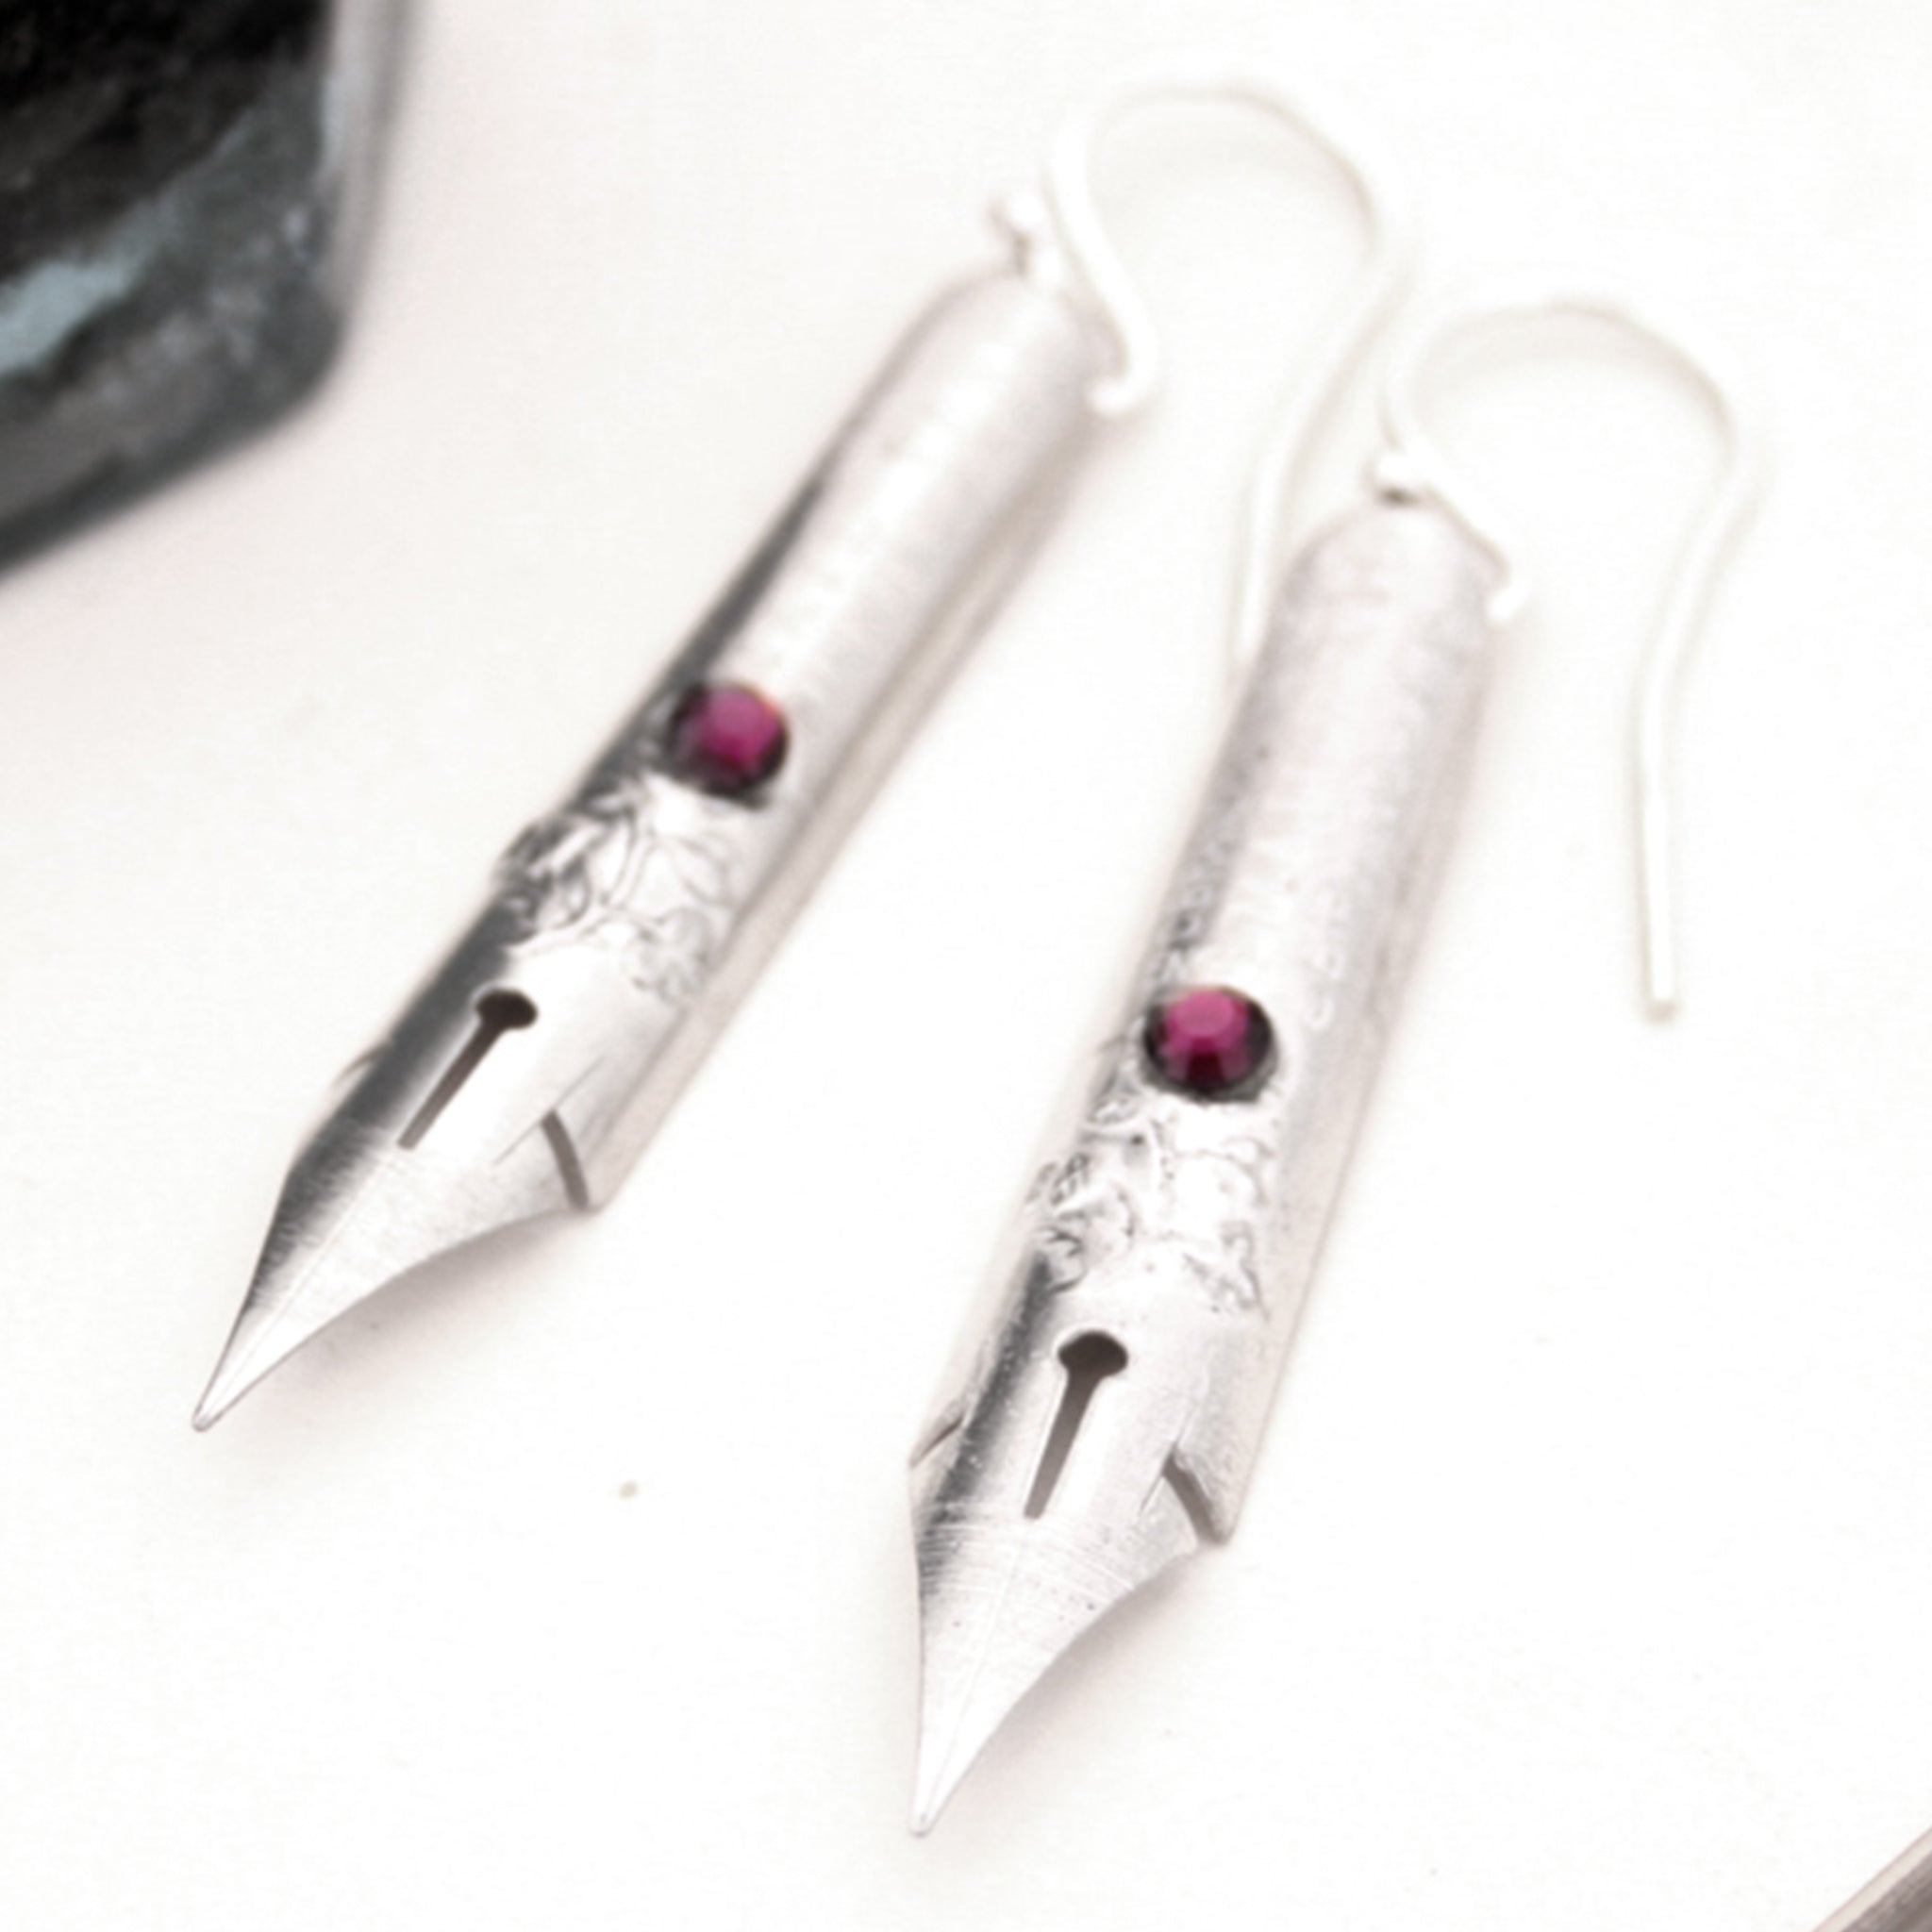 Birthstone Pen Nib Earrings